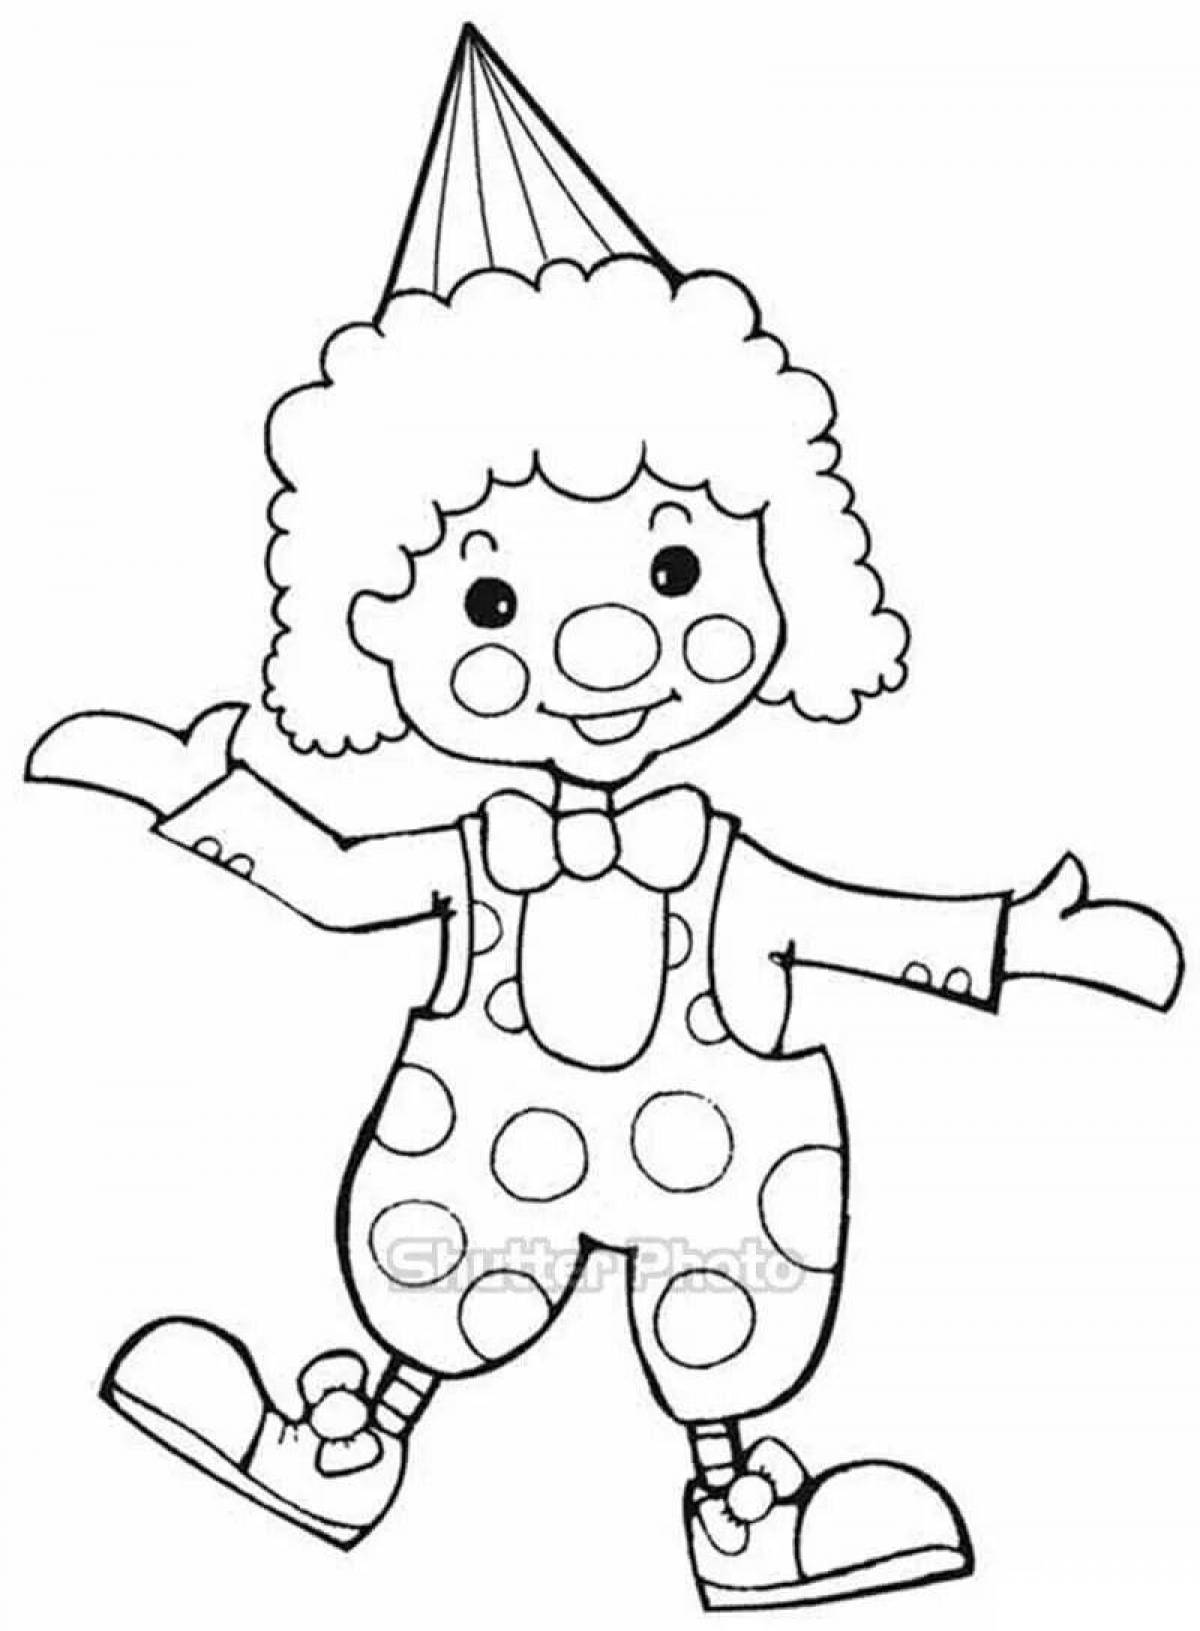 Анимированная раскраска клоуна для дошкольников